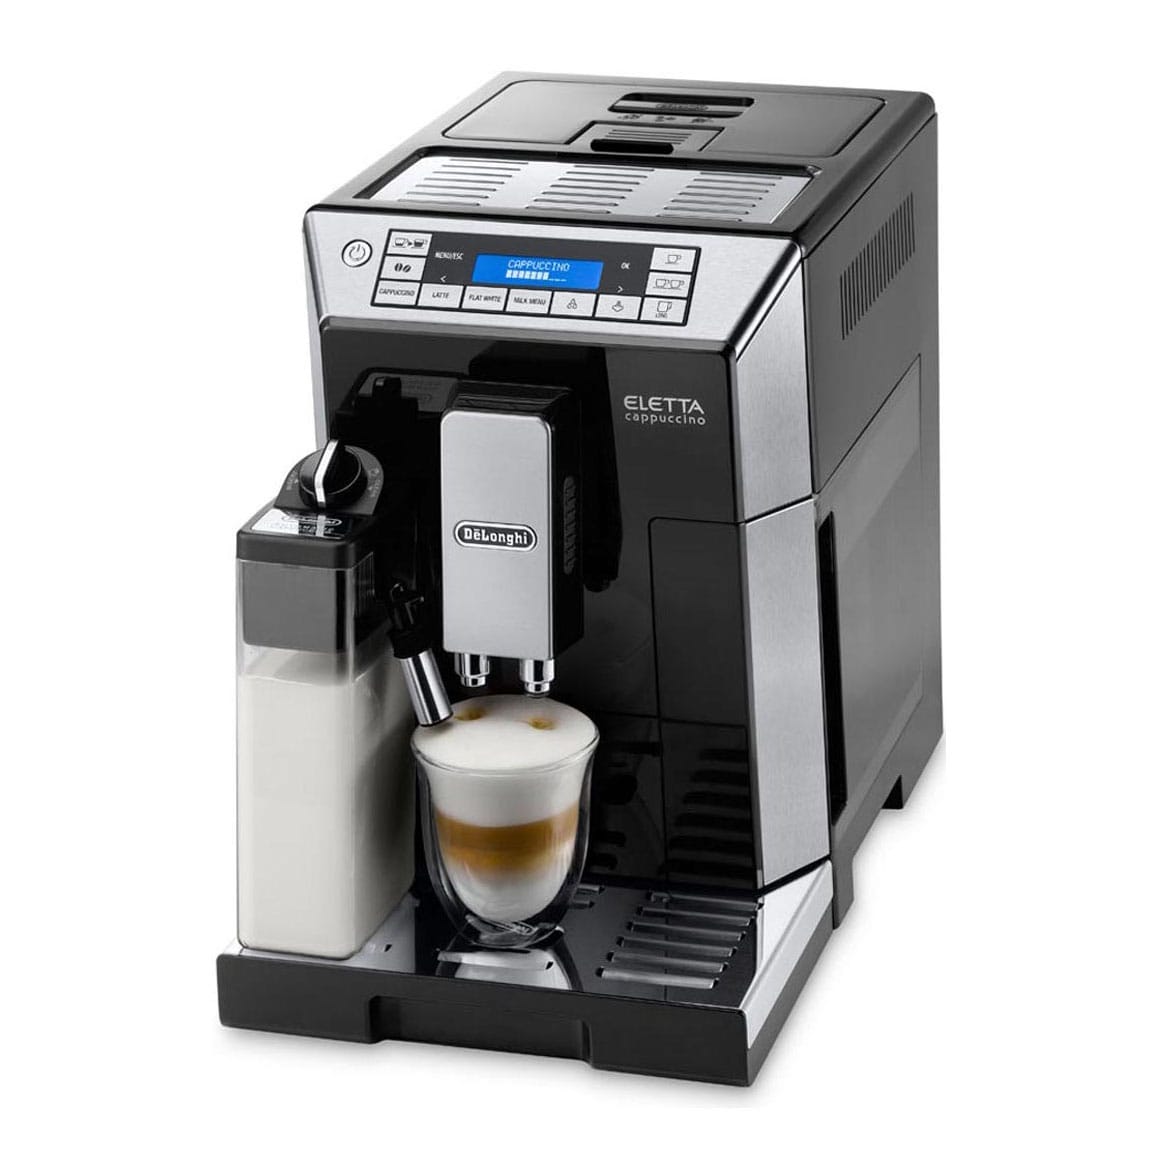 全自動コーヒーマシンの最高級機種 法人向けレンタル